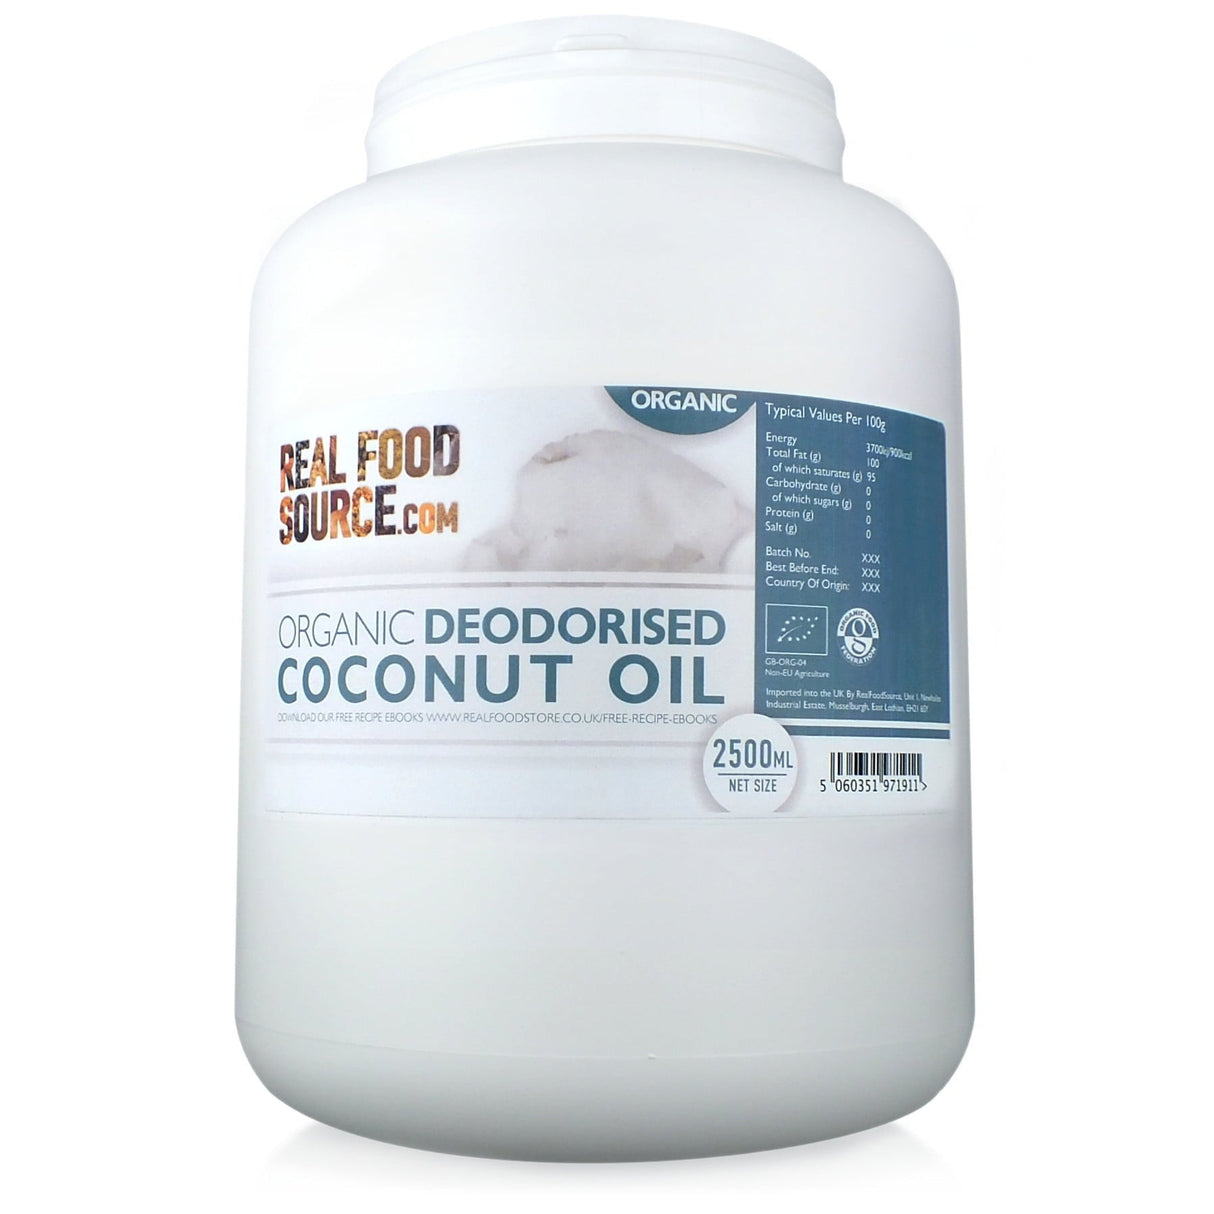 Organic Deodorised Coconut Oil